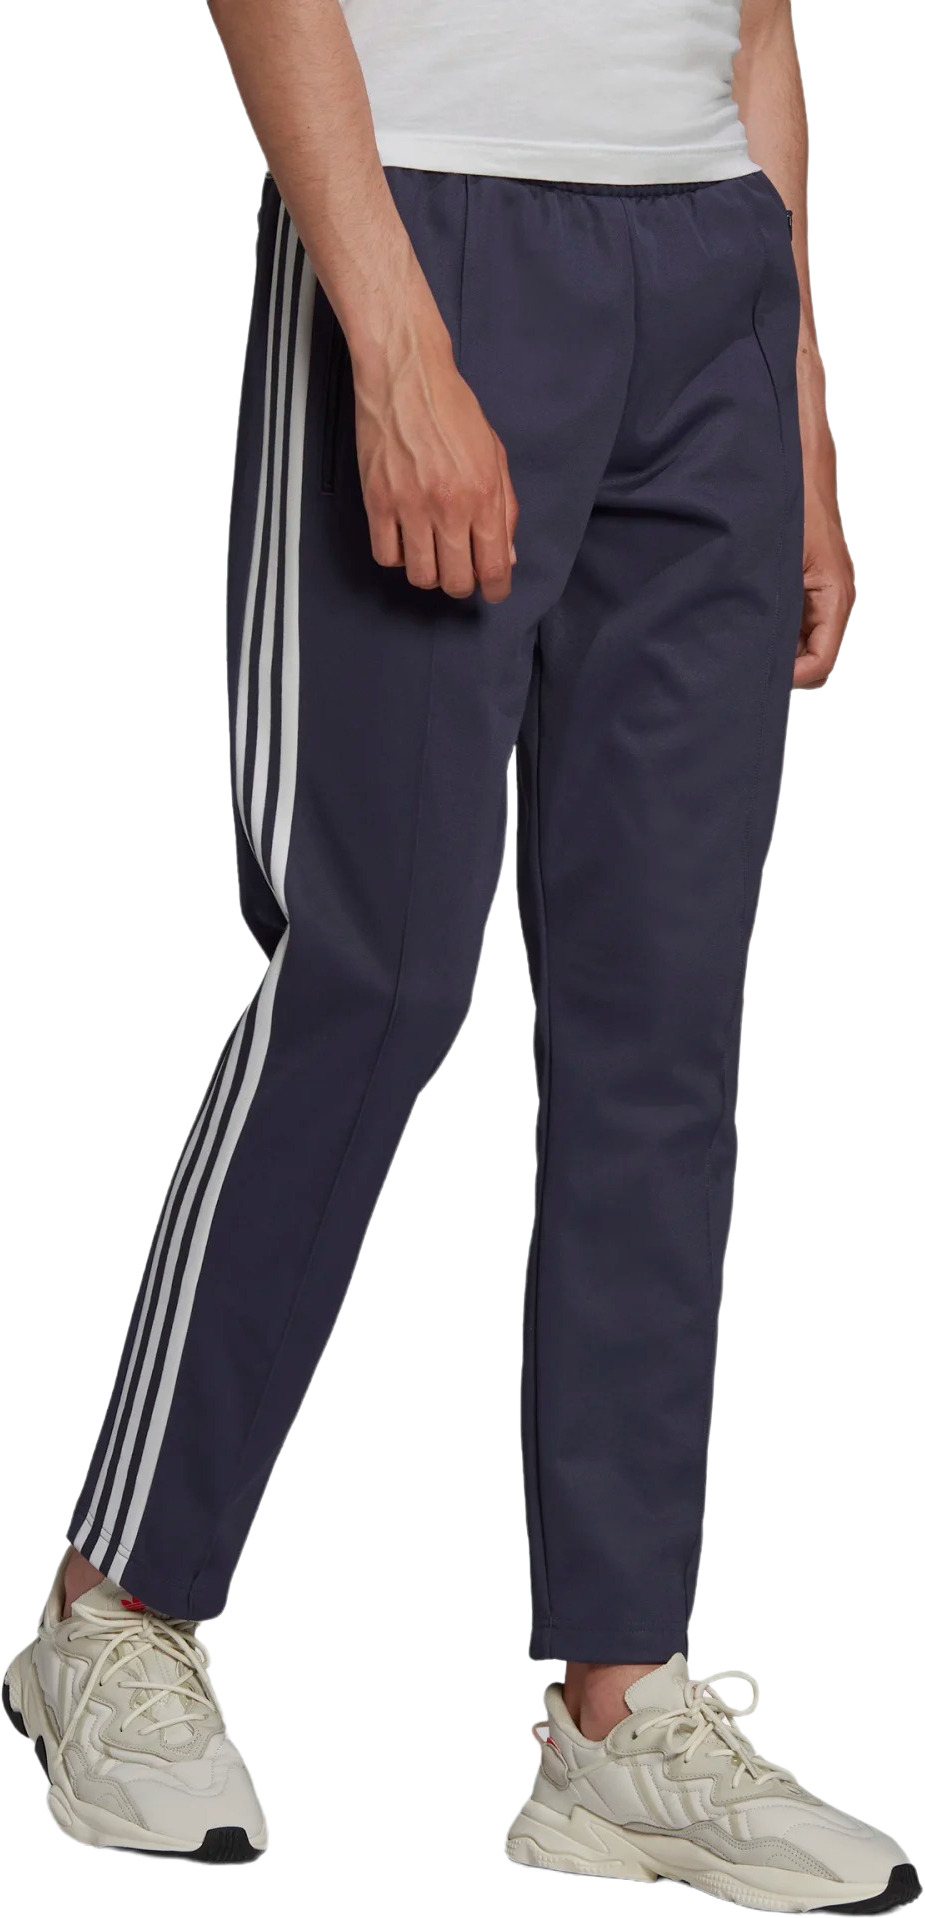 Брюки Adidas Beckenbauer Track Pants (HB9439) купить за 9 999 руб. в интернет-магазине